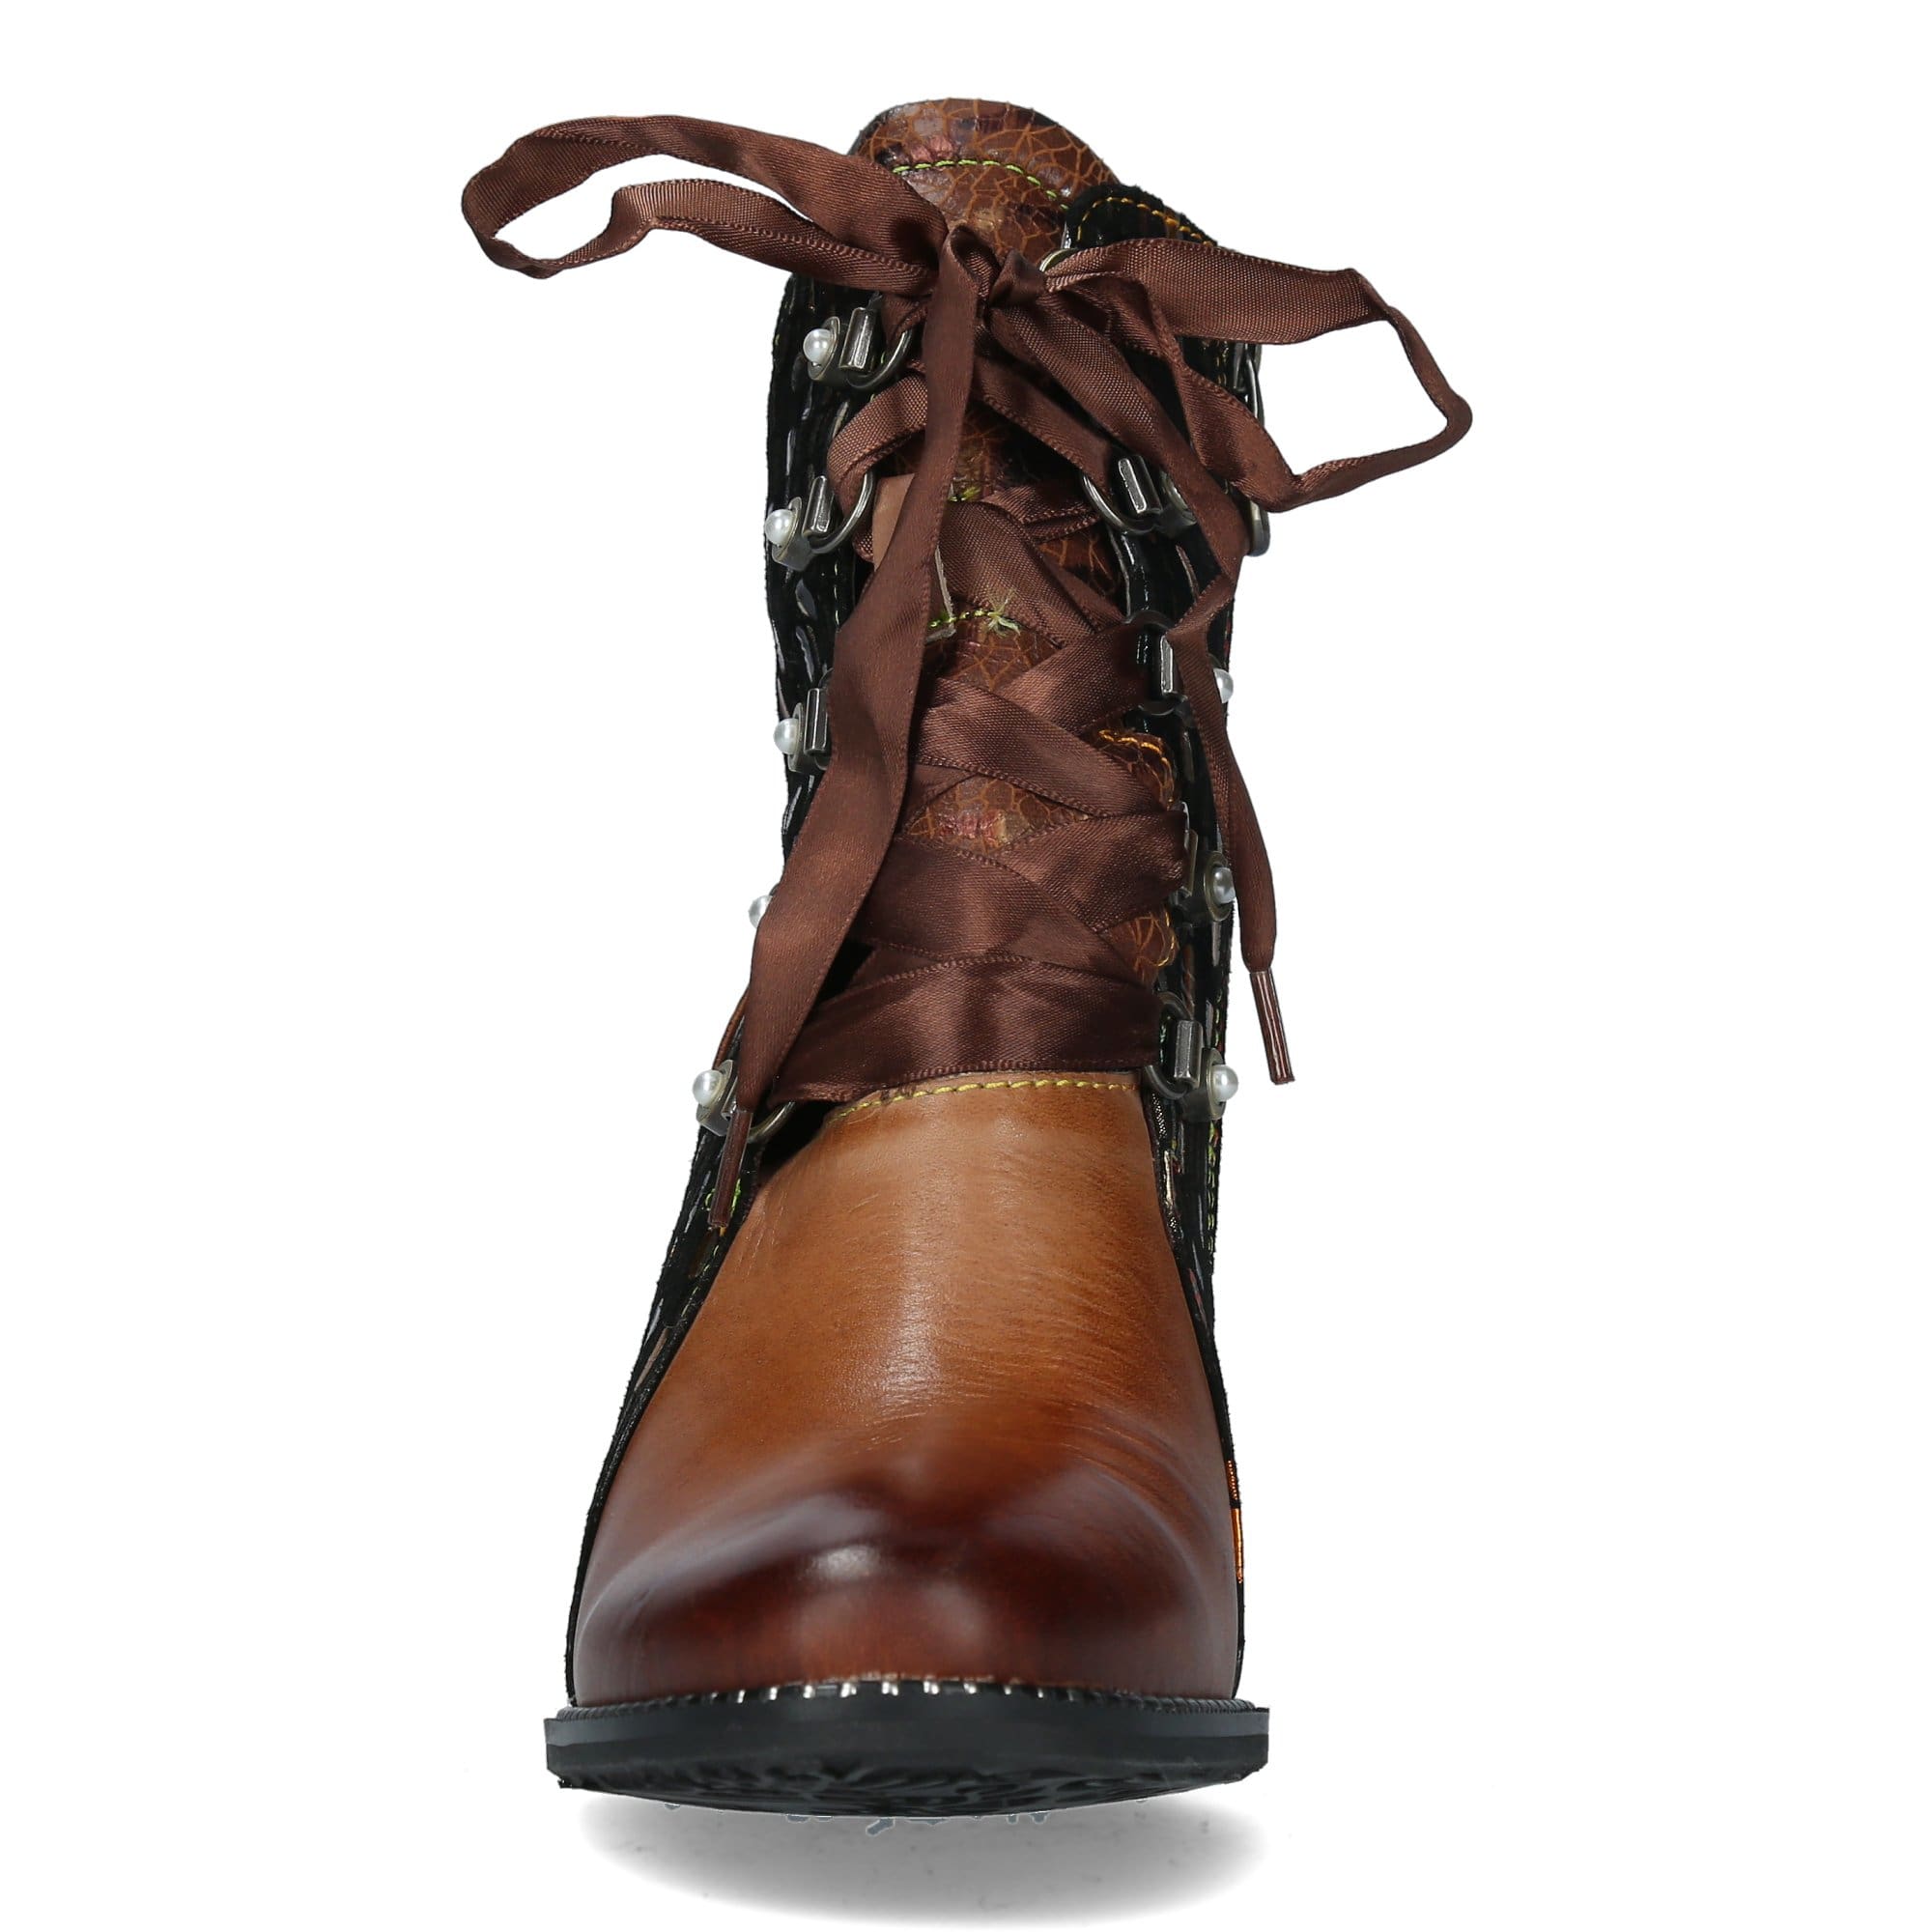 Shoe KAMAO 03 - Boots